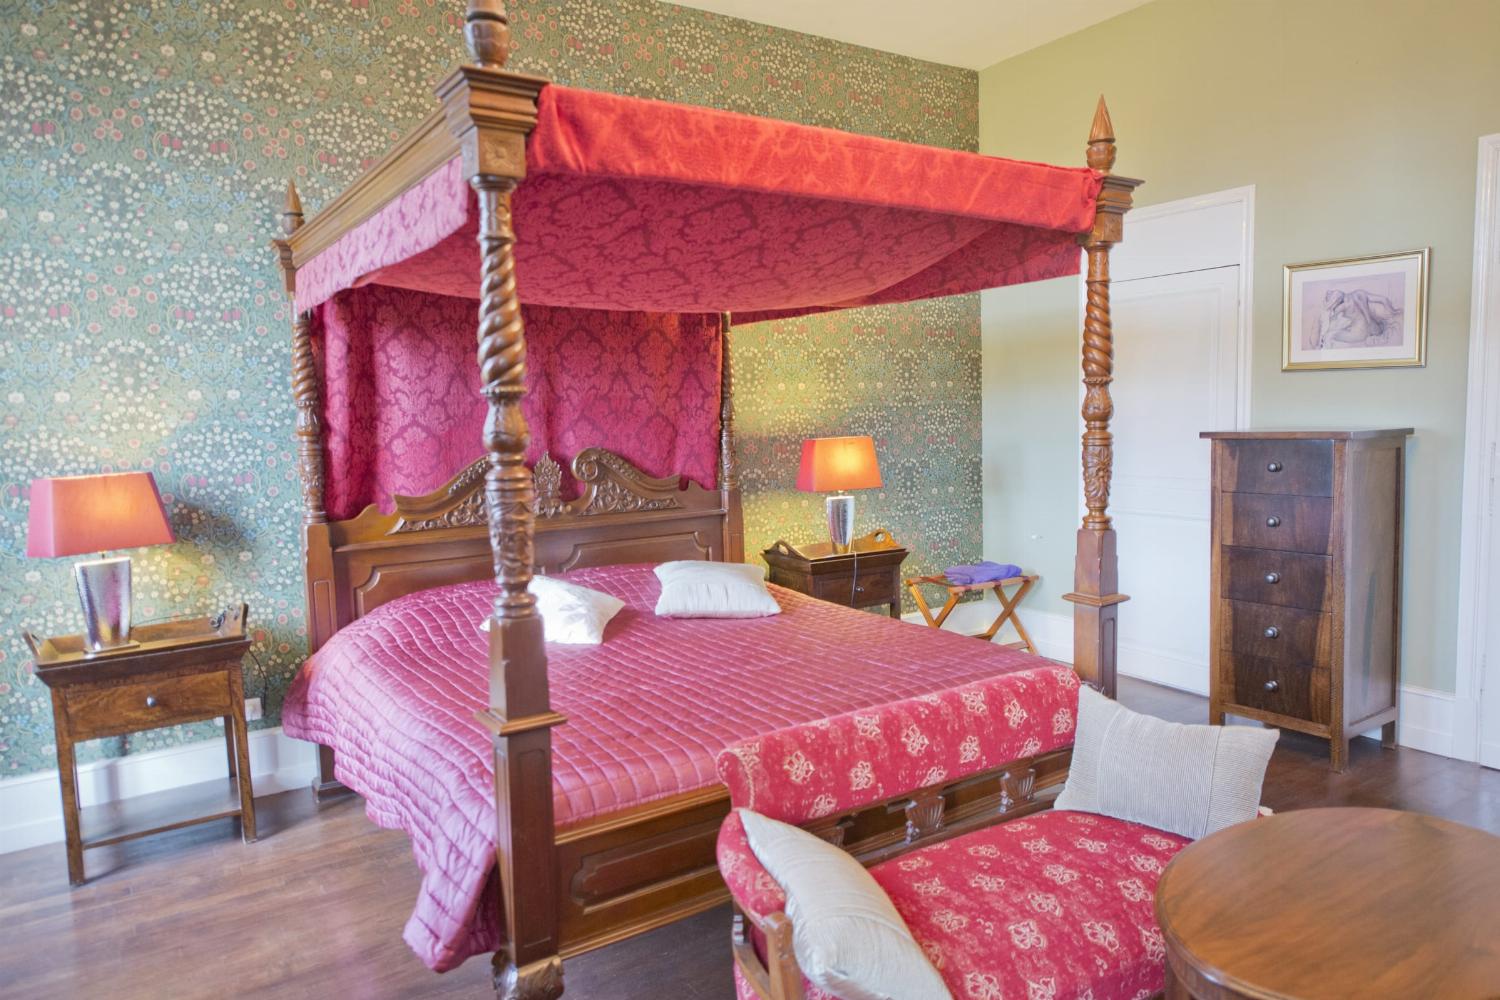 Bedroom | Rental château in Loire